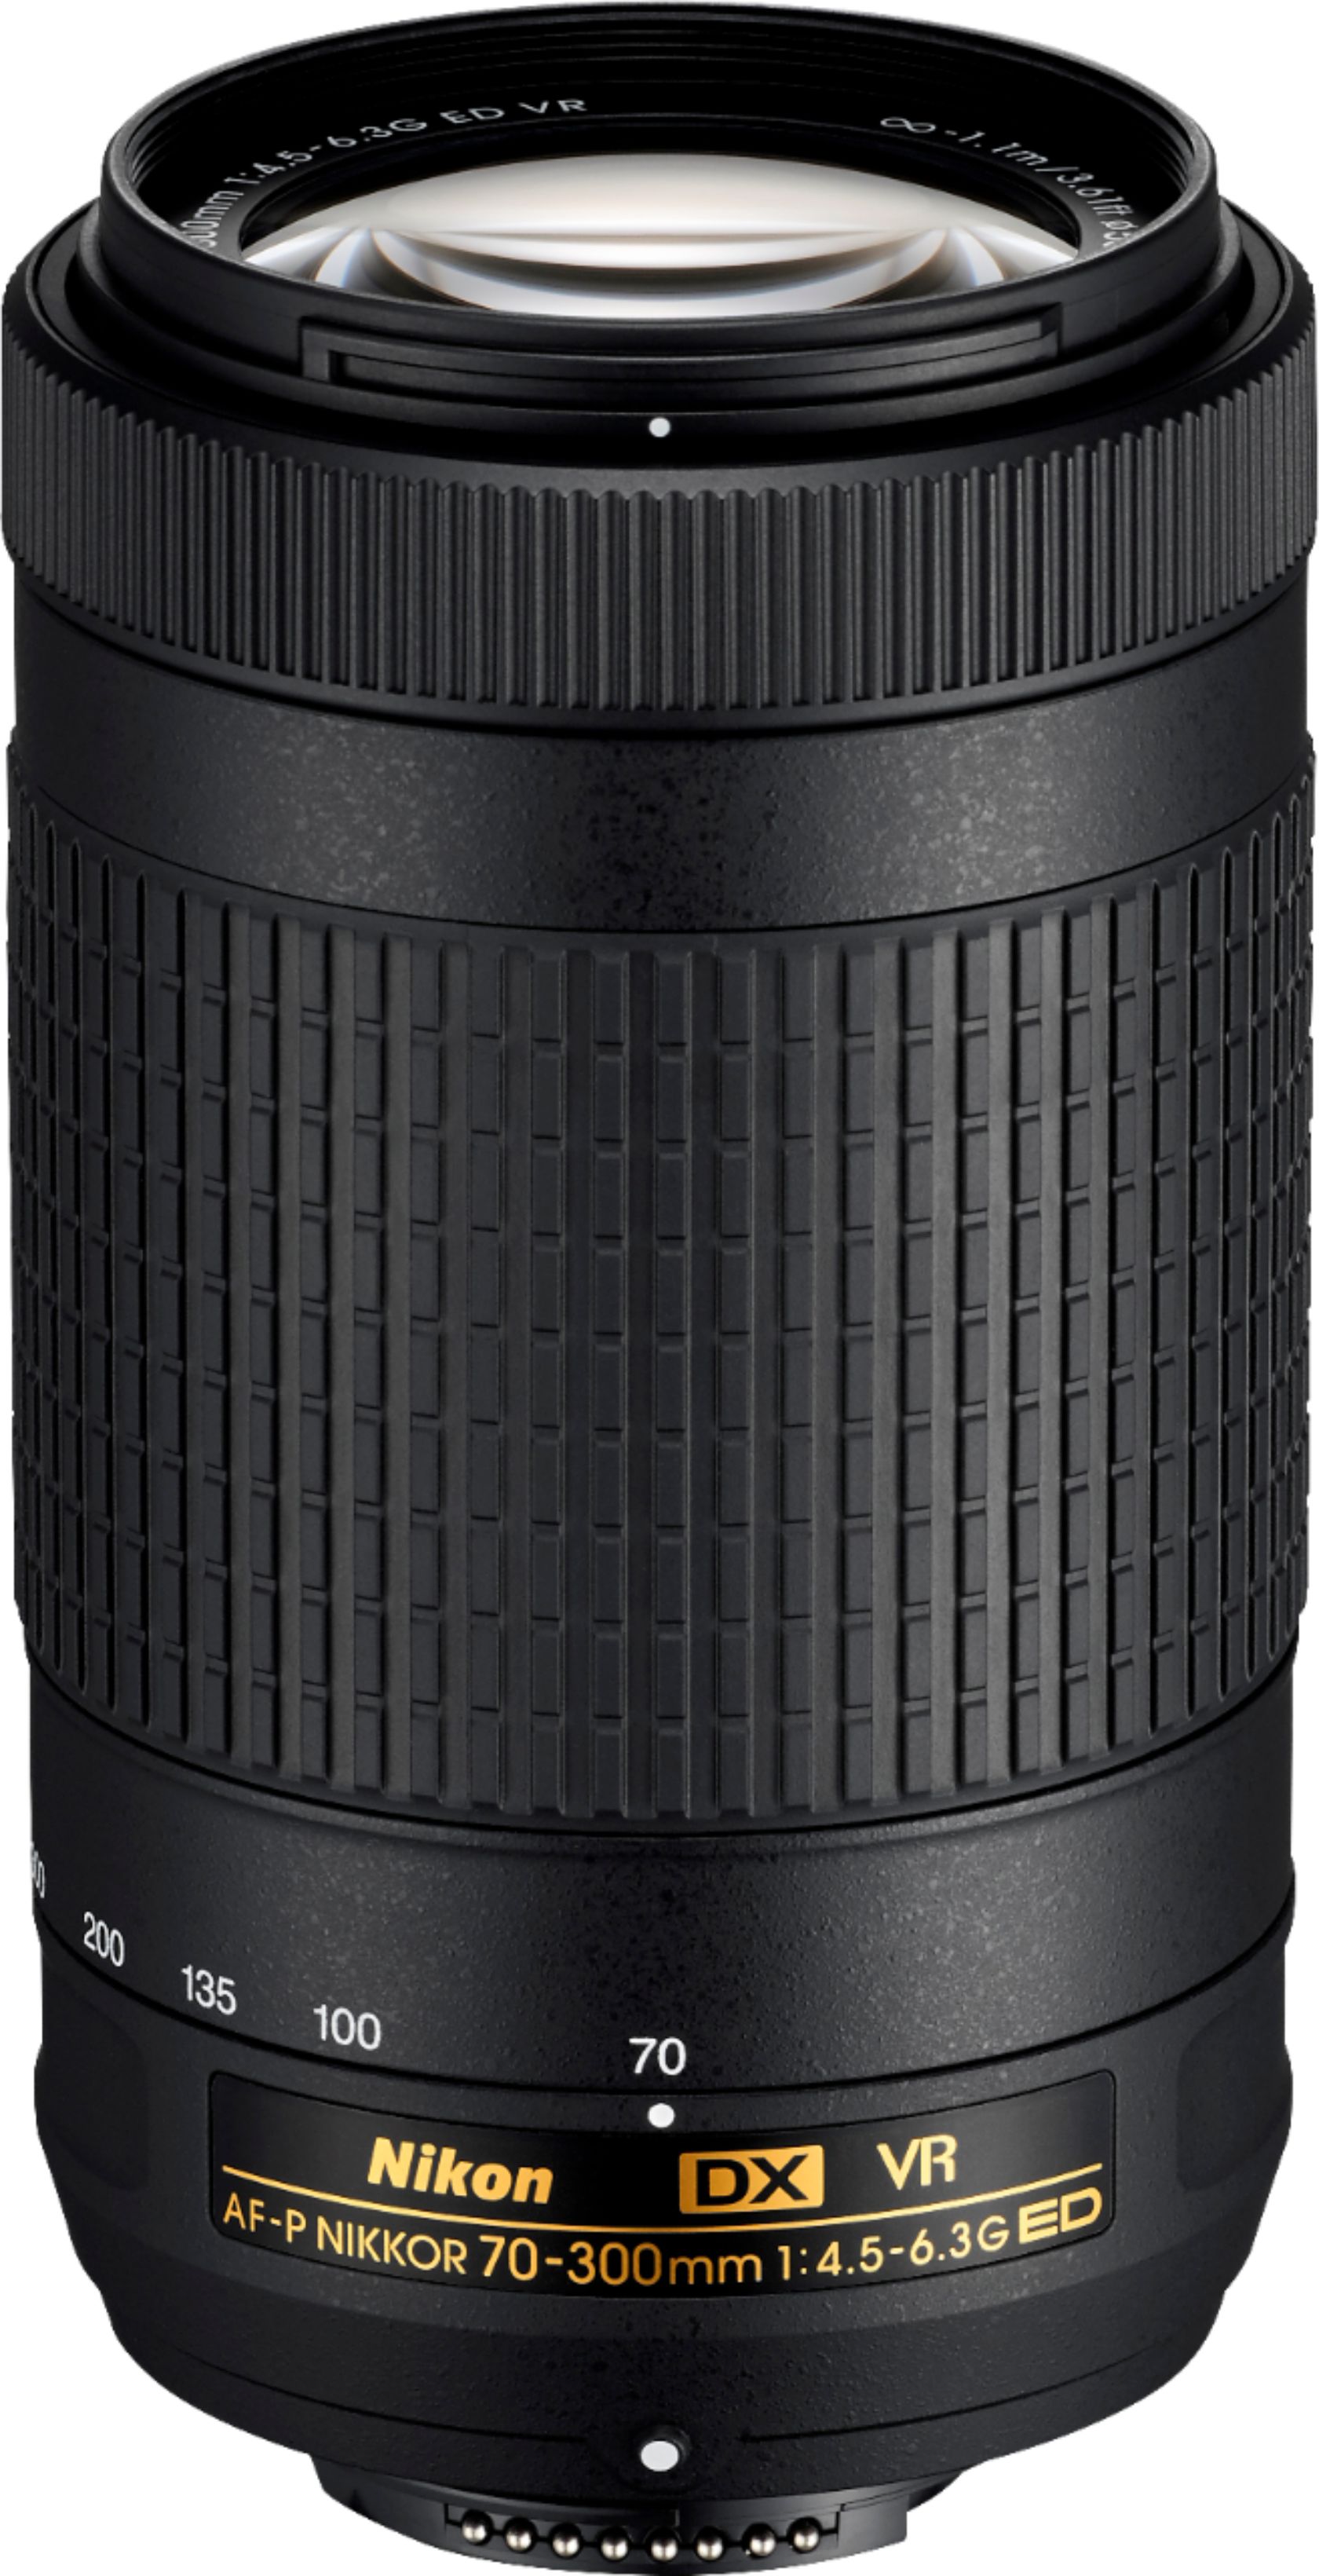 Nikon AF-P DX NIKKOR 70-300mm f/4.5-6.3G ED VR Telephoto Zoom Lens for  APS-C F-mount cameras Black 20062 - Best Buy